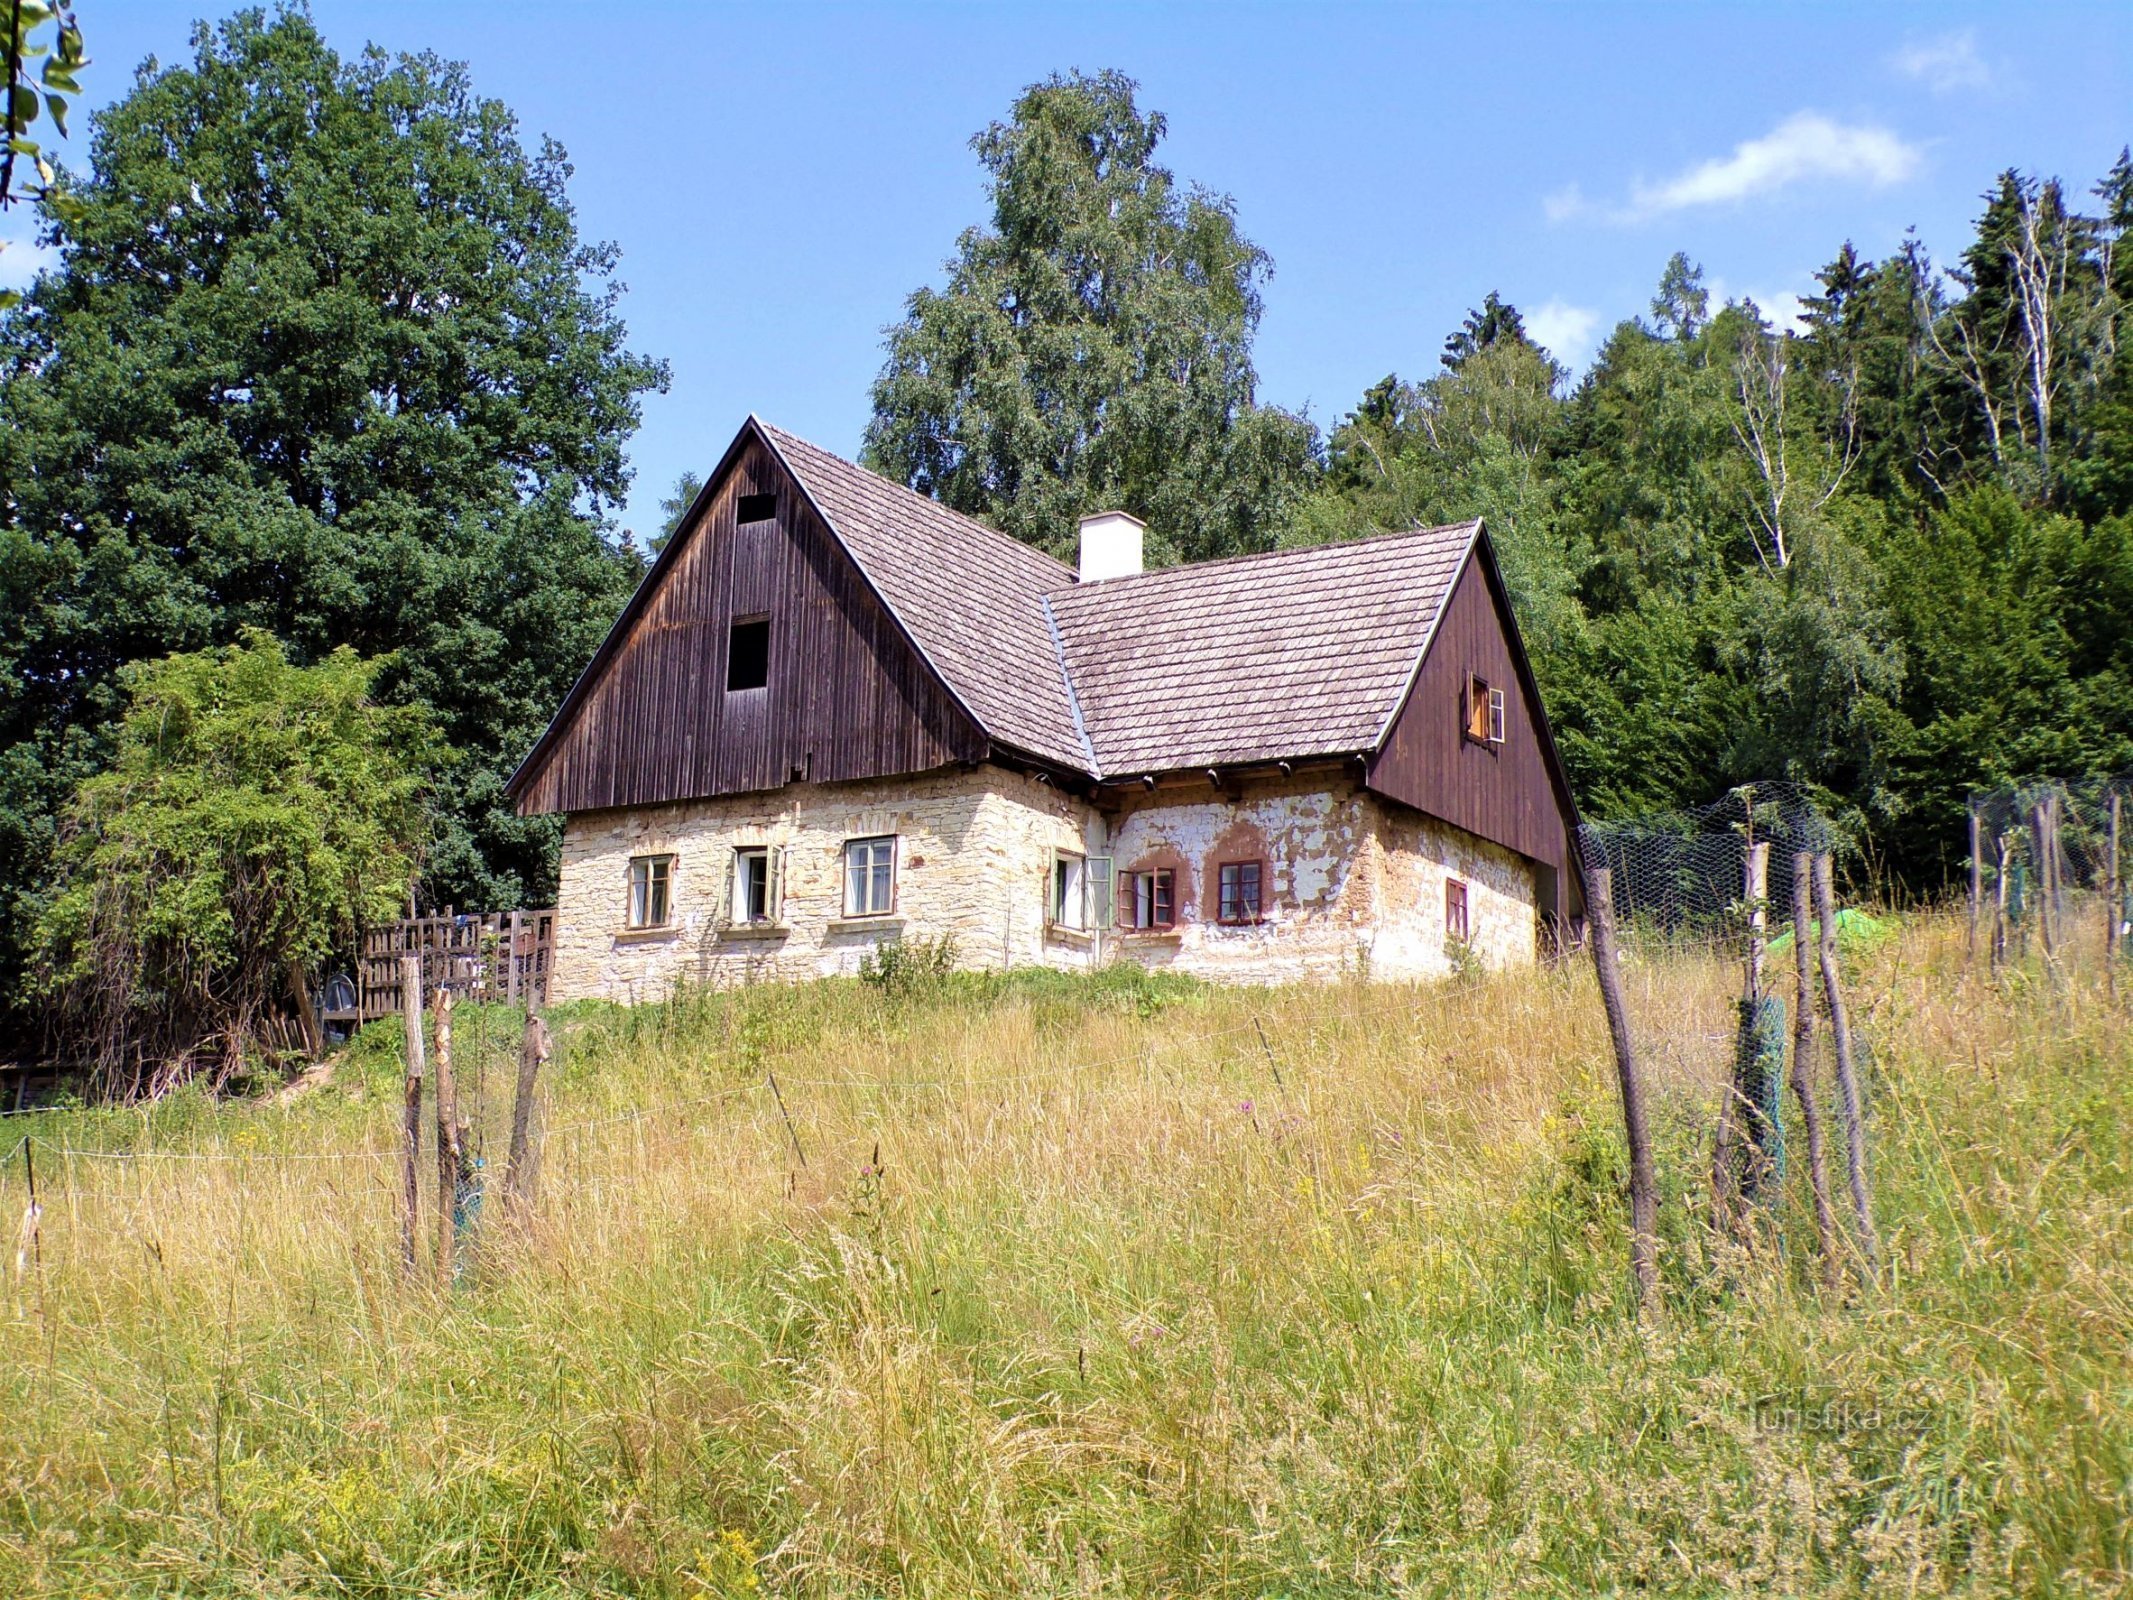 House No. 501 in Bokouš (Velká Bukovina, 13.7.2021/XNUMX/XNUMX)